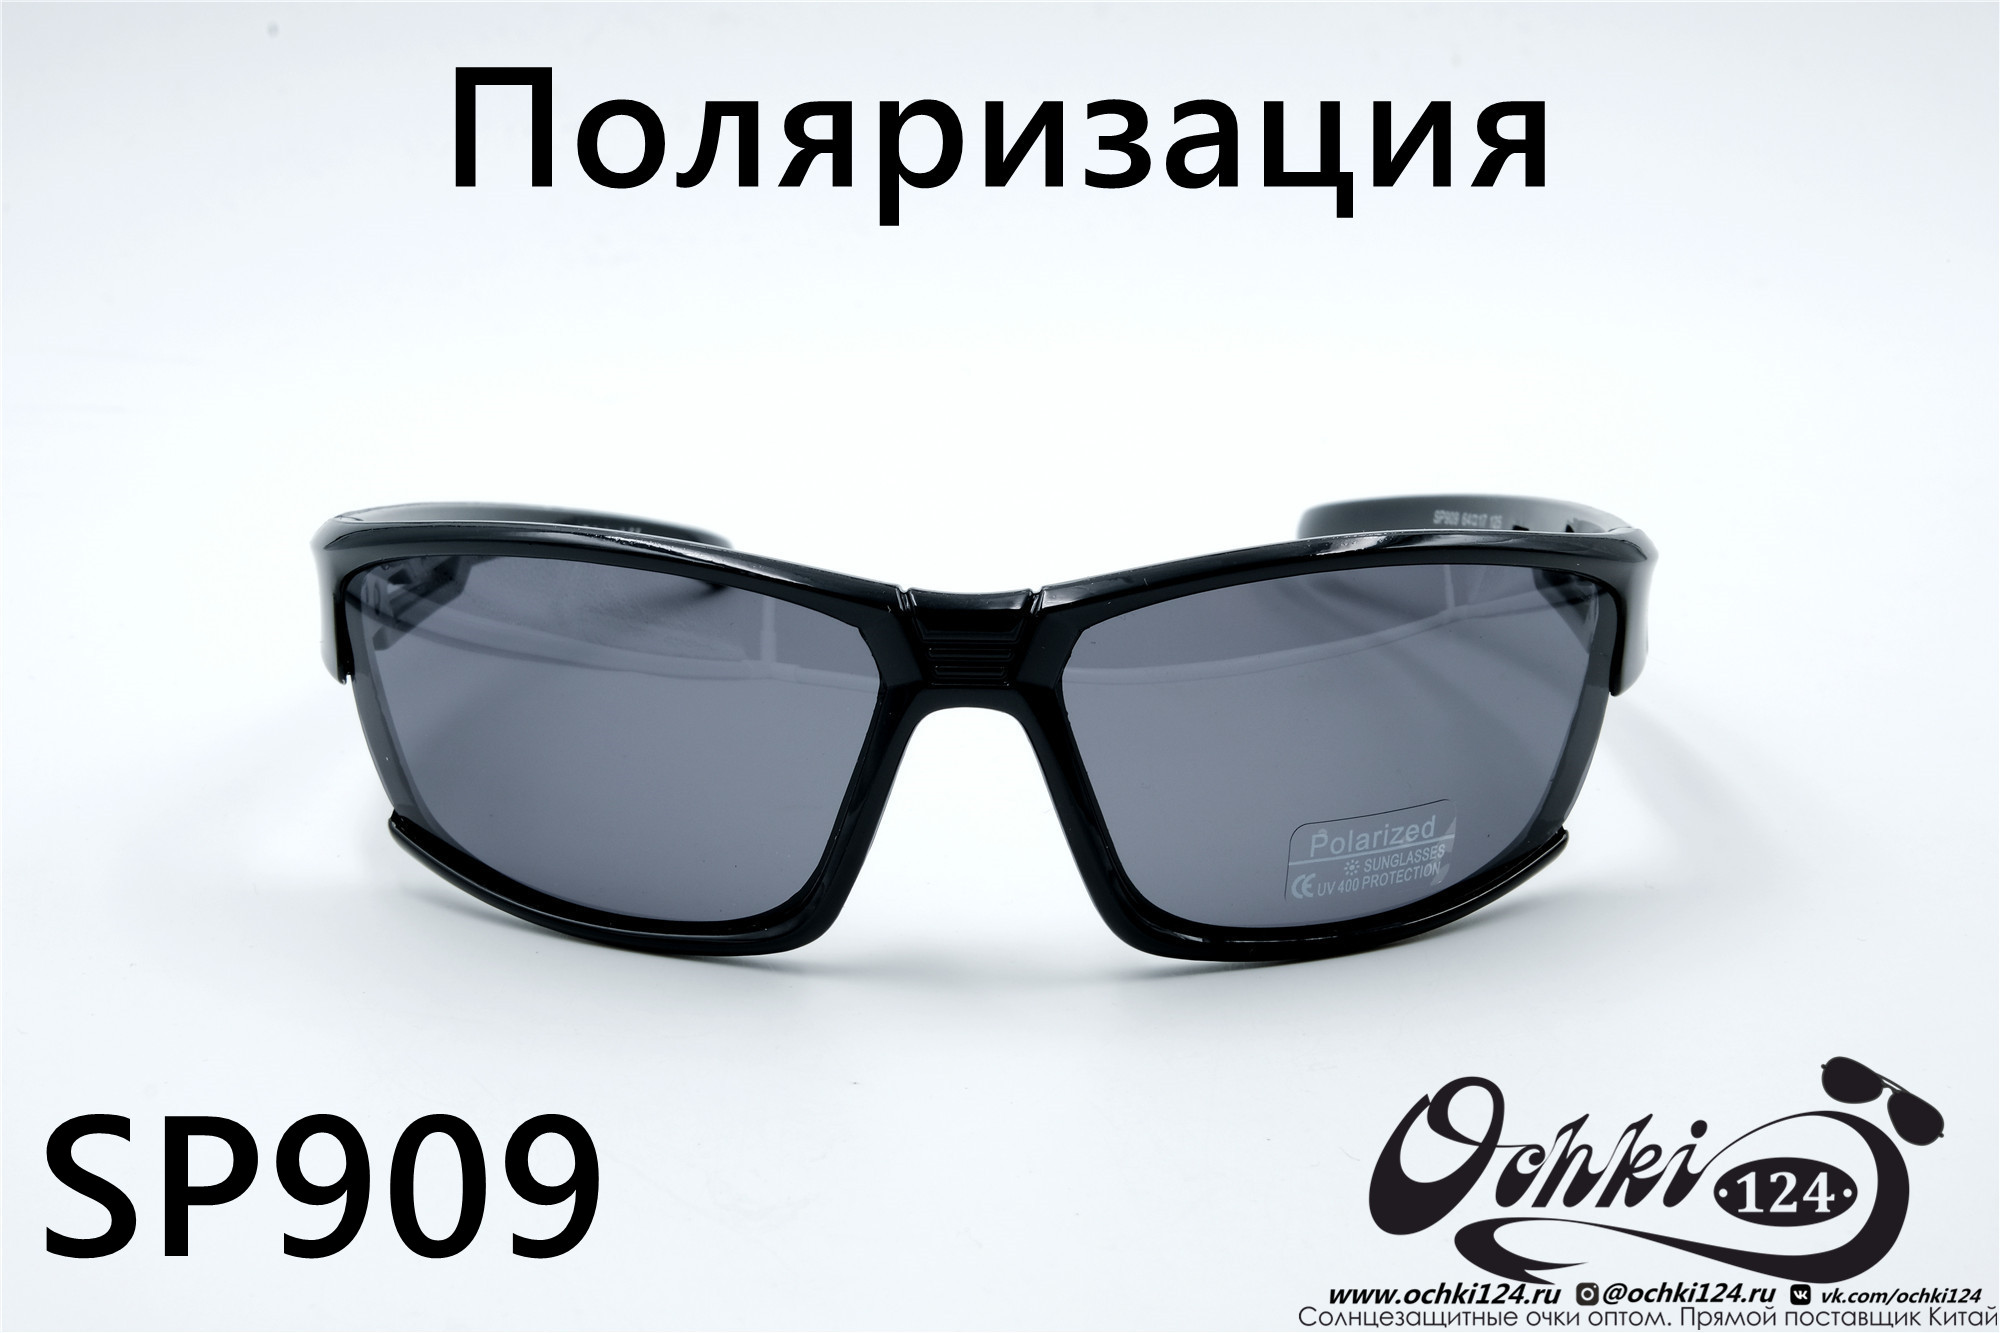  Солнцезащитные очки картинка 2022 Мужские Поляризованные Спорт Materice SP909-5 